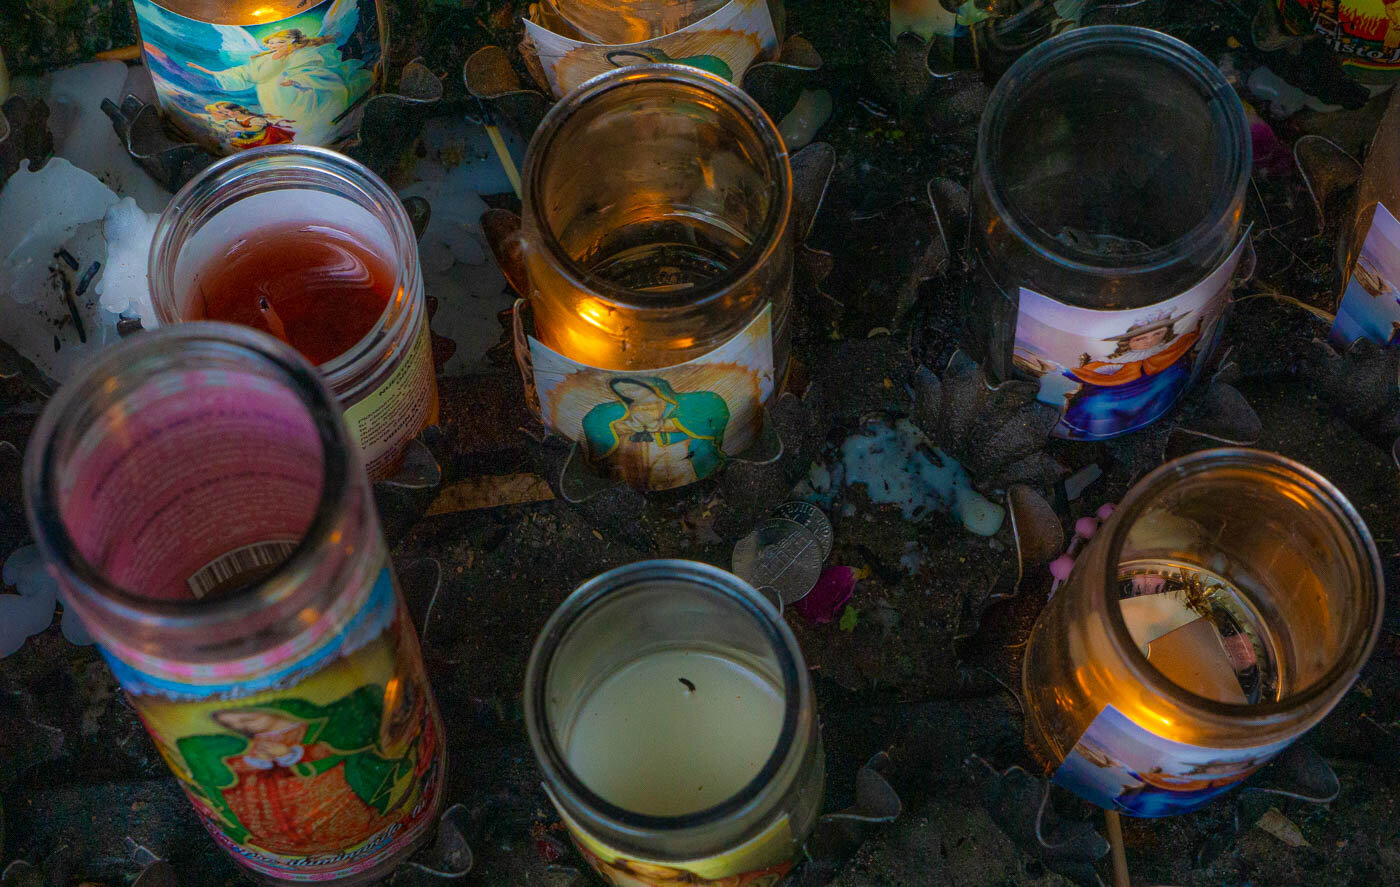 Santuario de Chimayo Candles